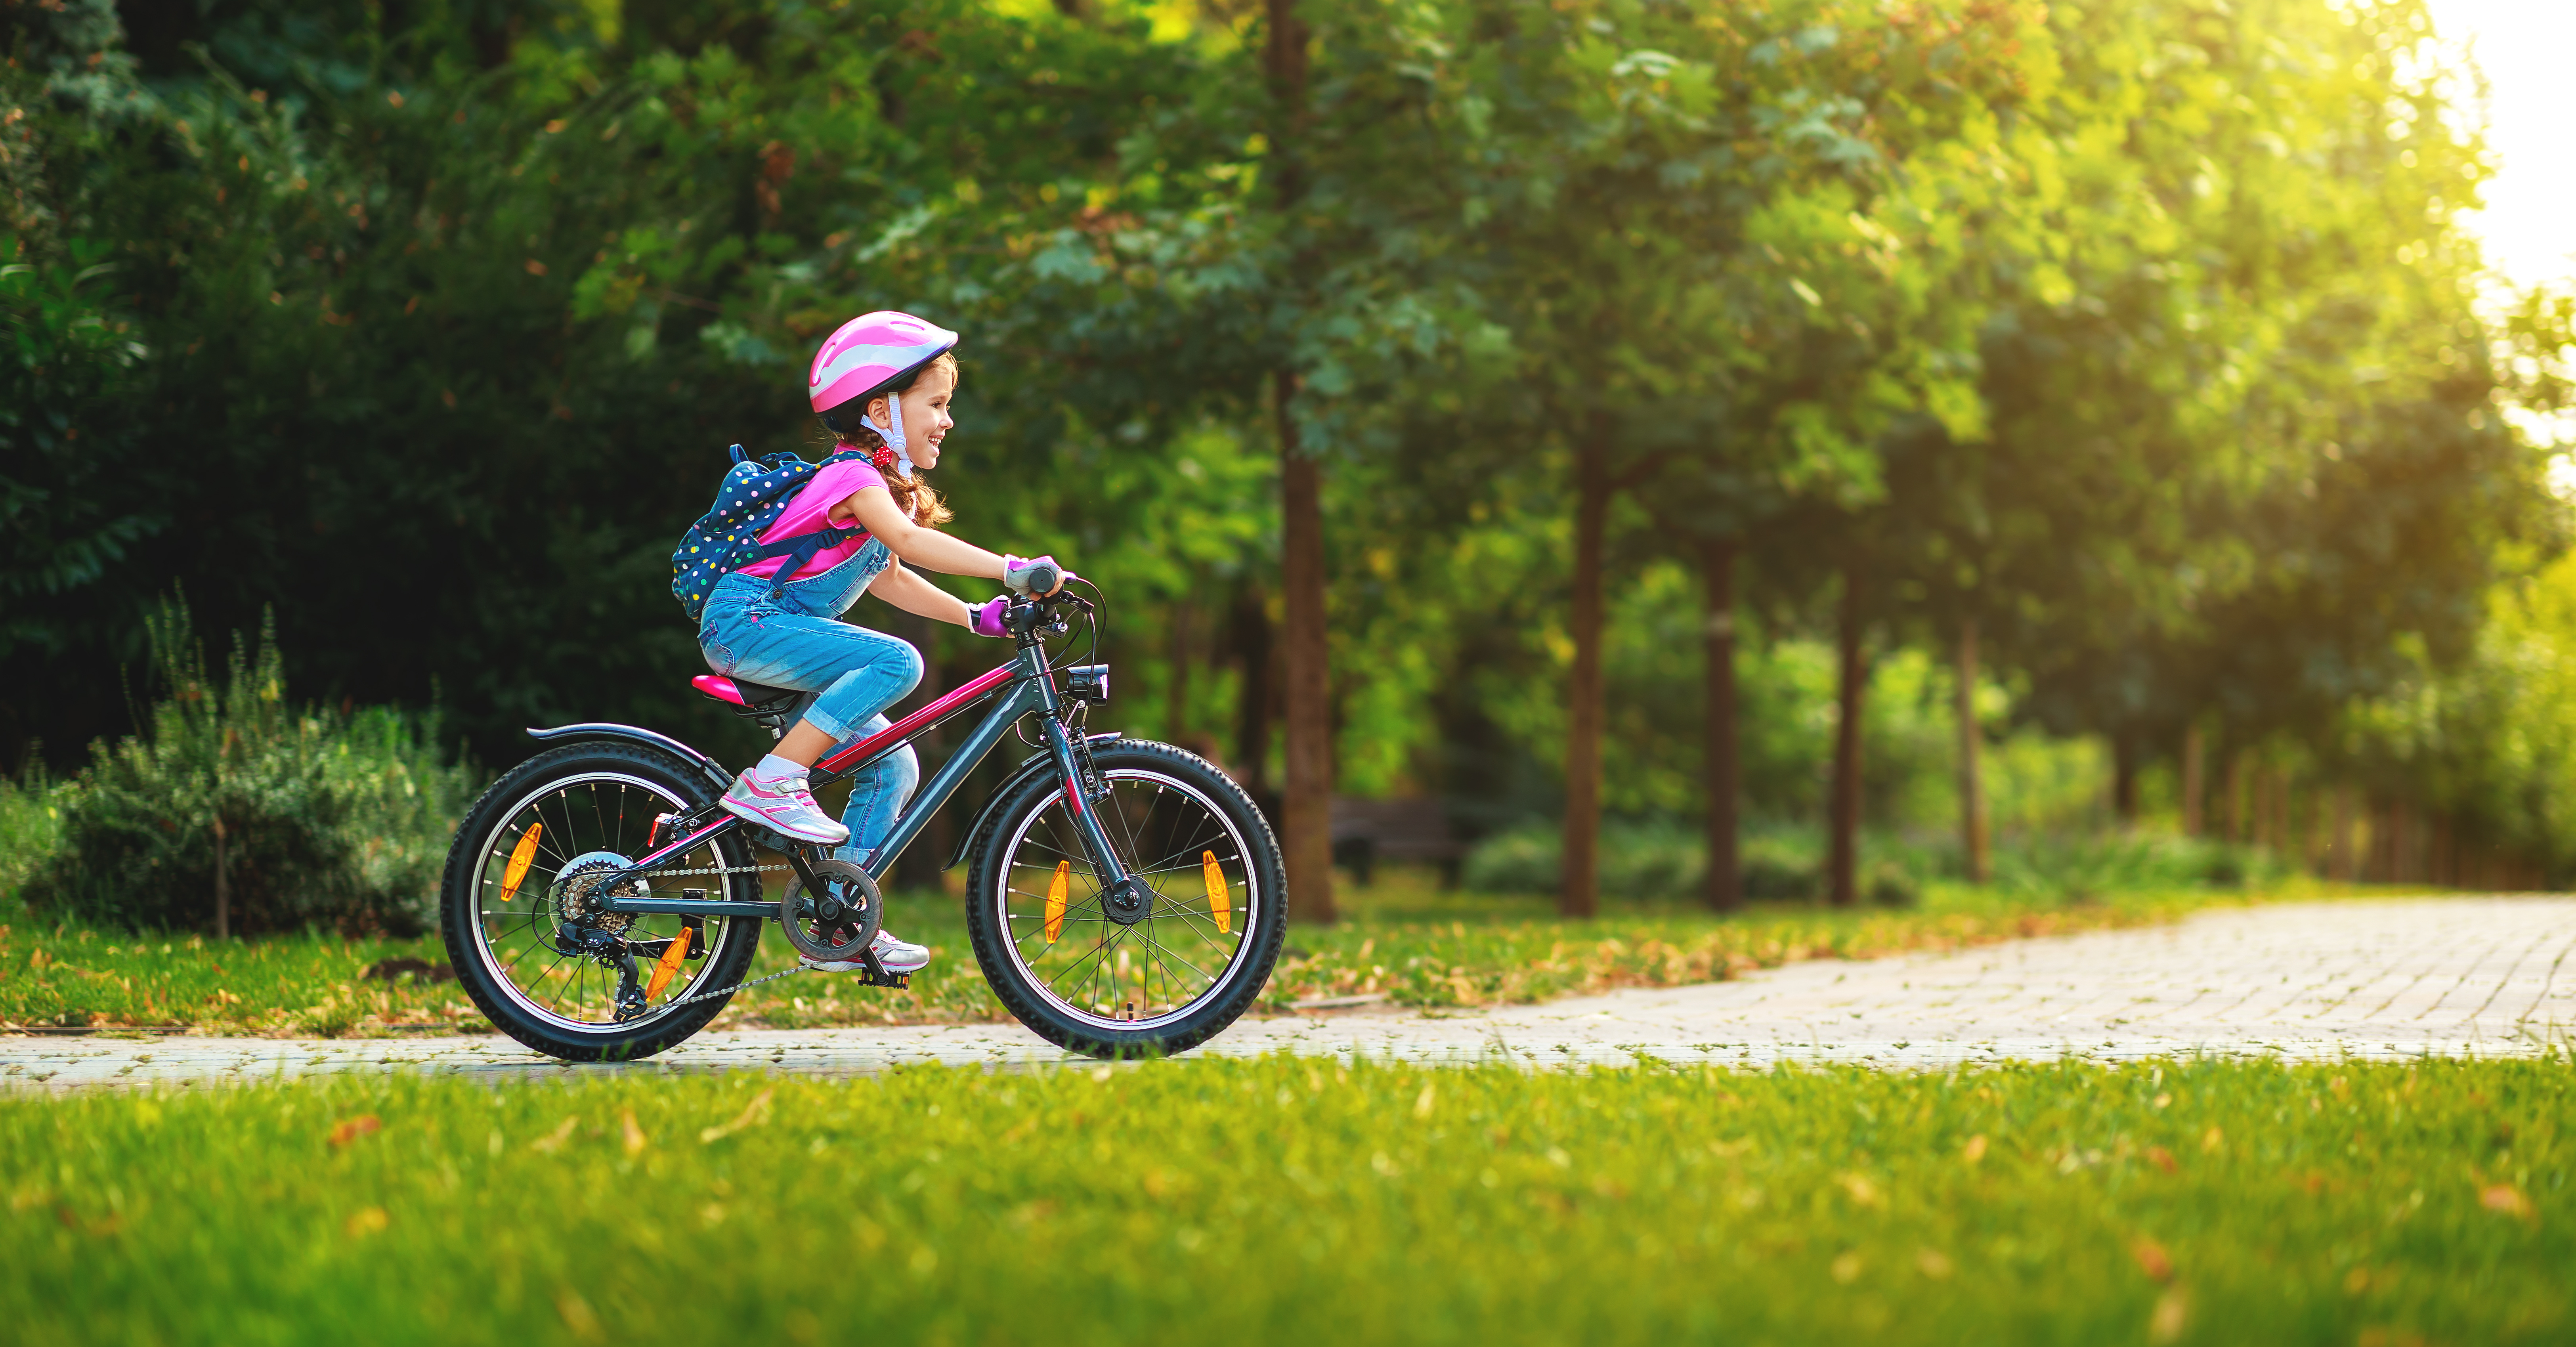 Comment bien choisir un vélo pour enfant ?